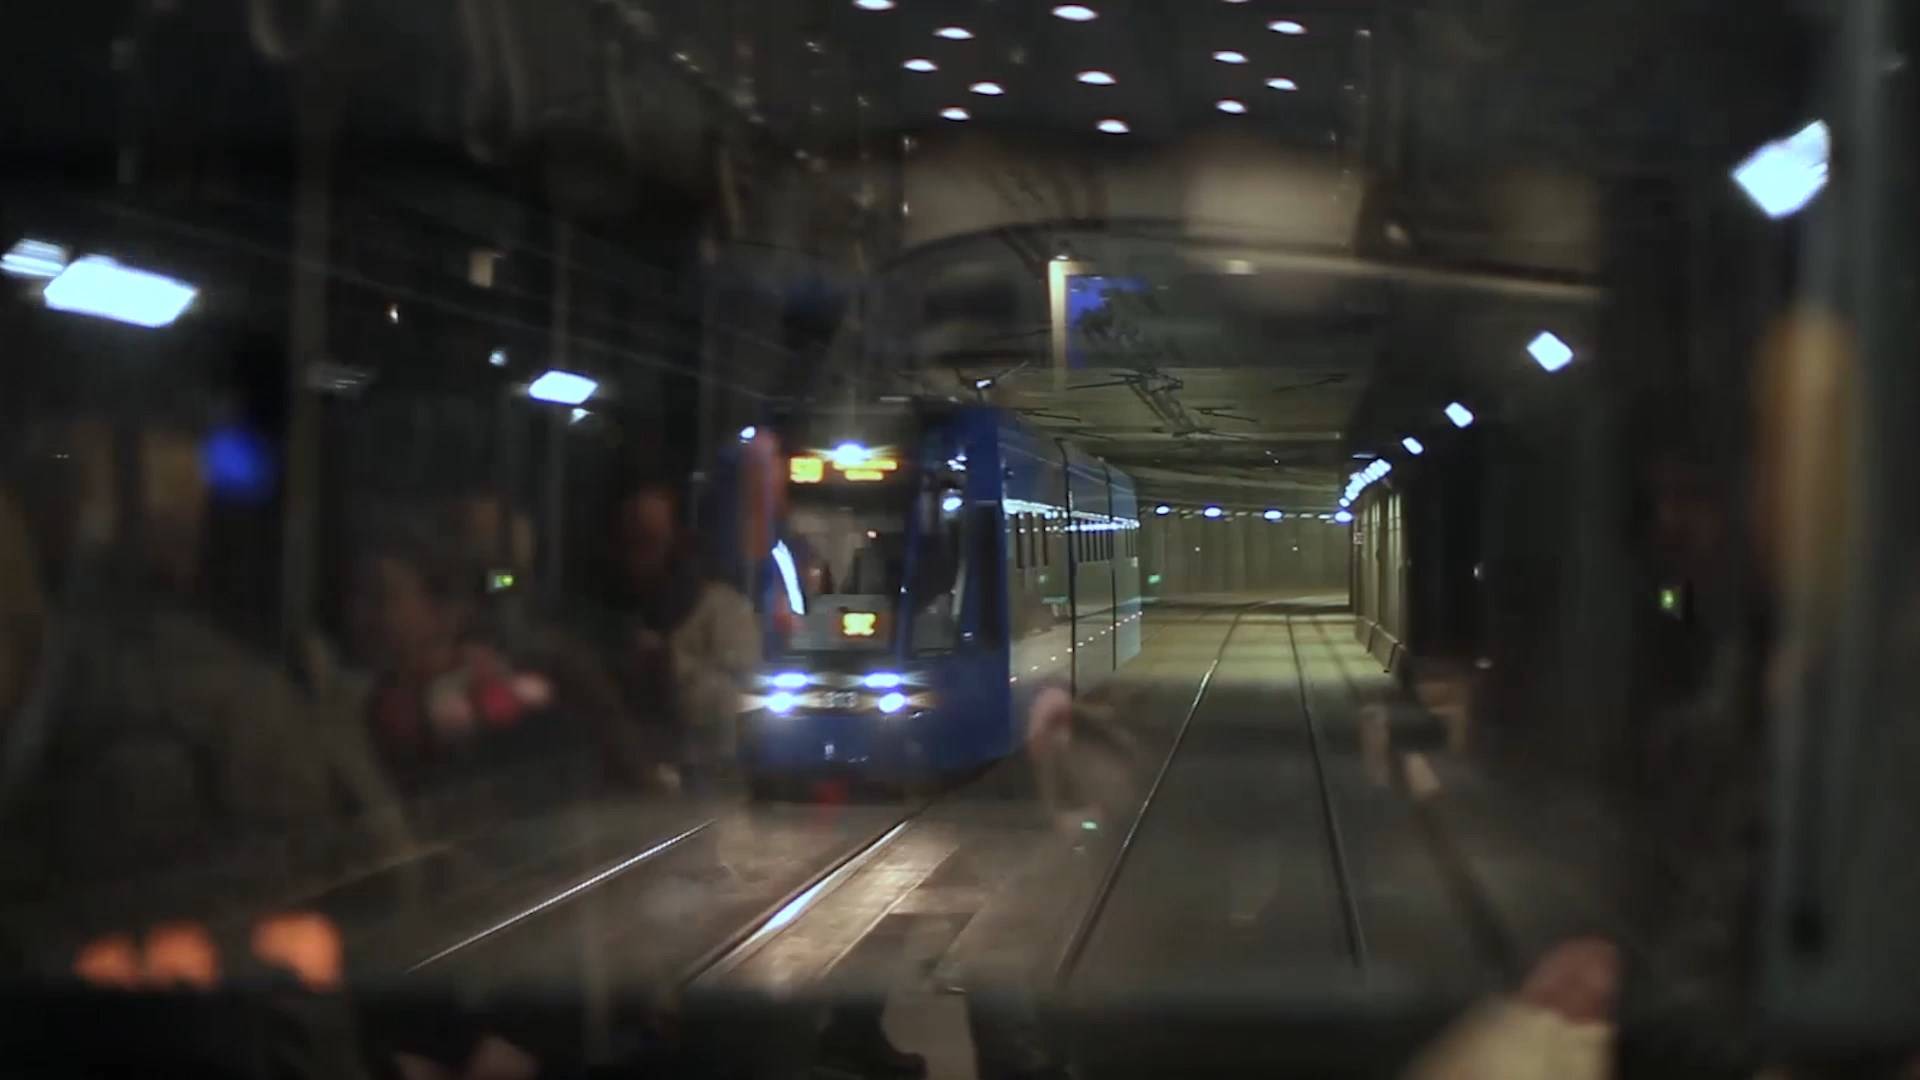 Radni narzekają: nie chcą tramwaju w tunelu zamiast metra